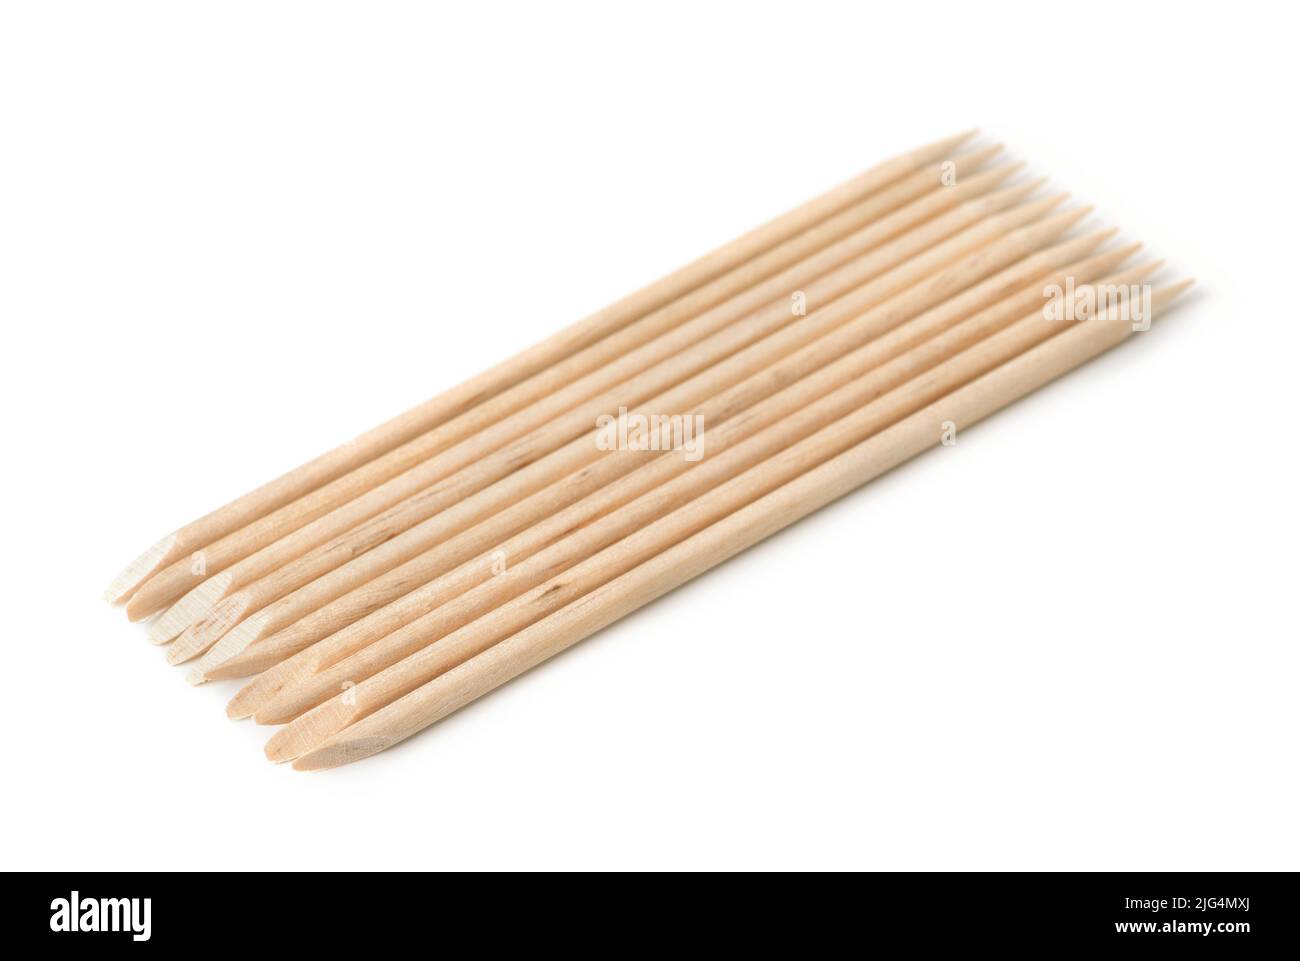 Group of orange wood sticks cuticle pushers isolated on white Stock Photo